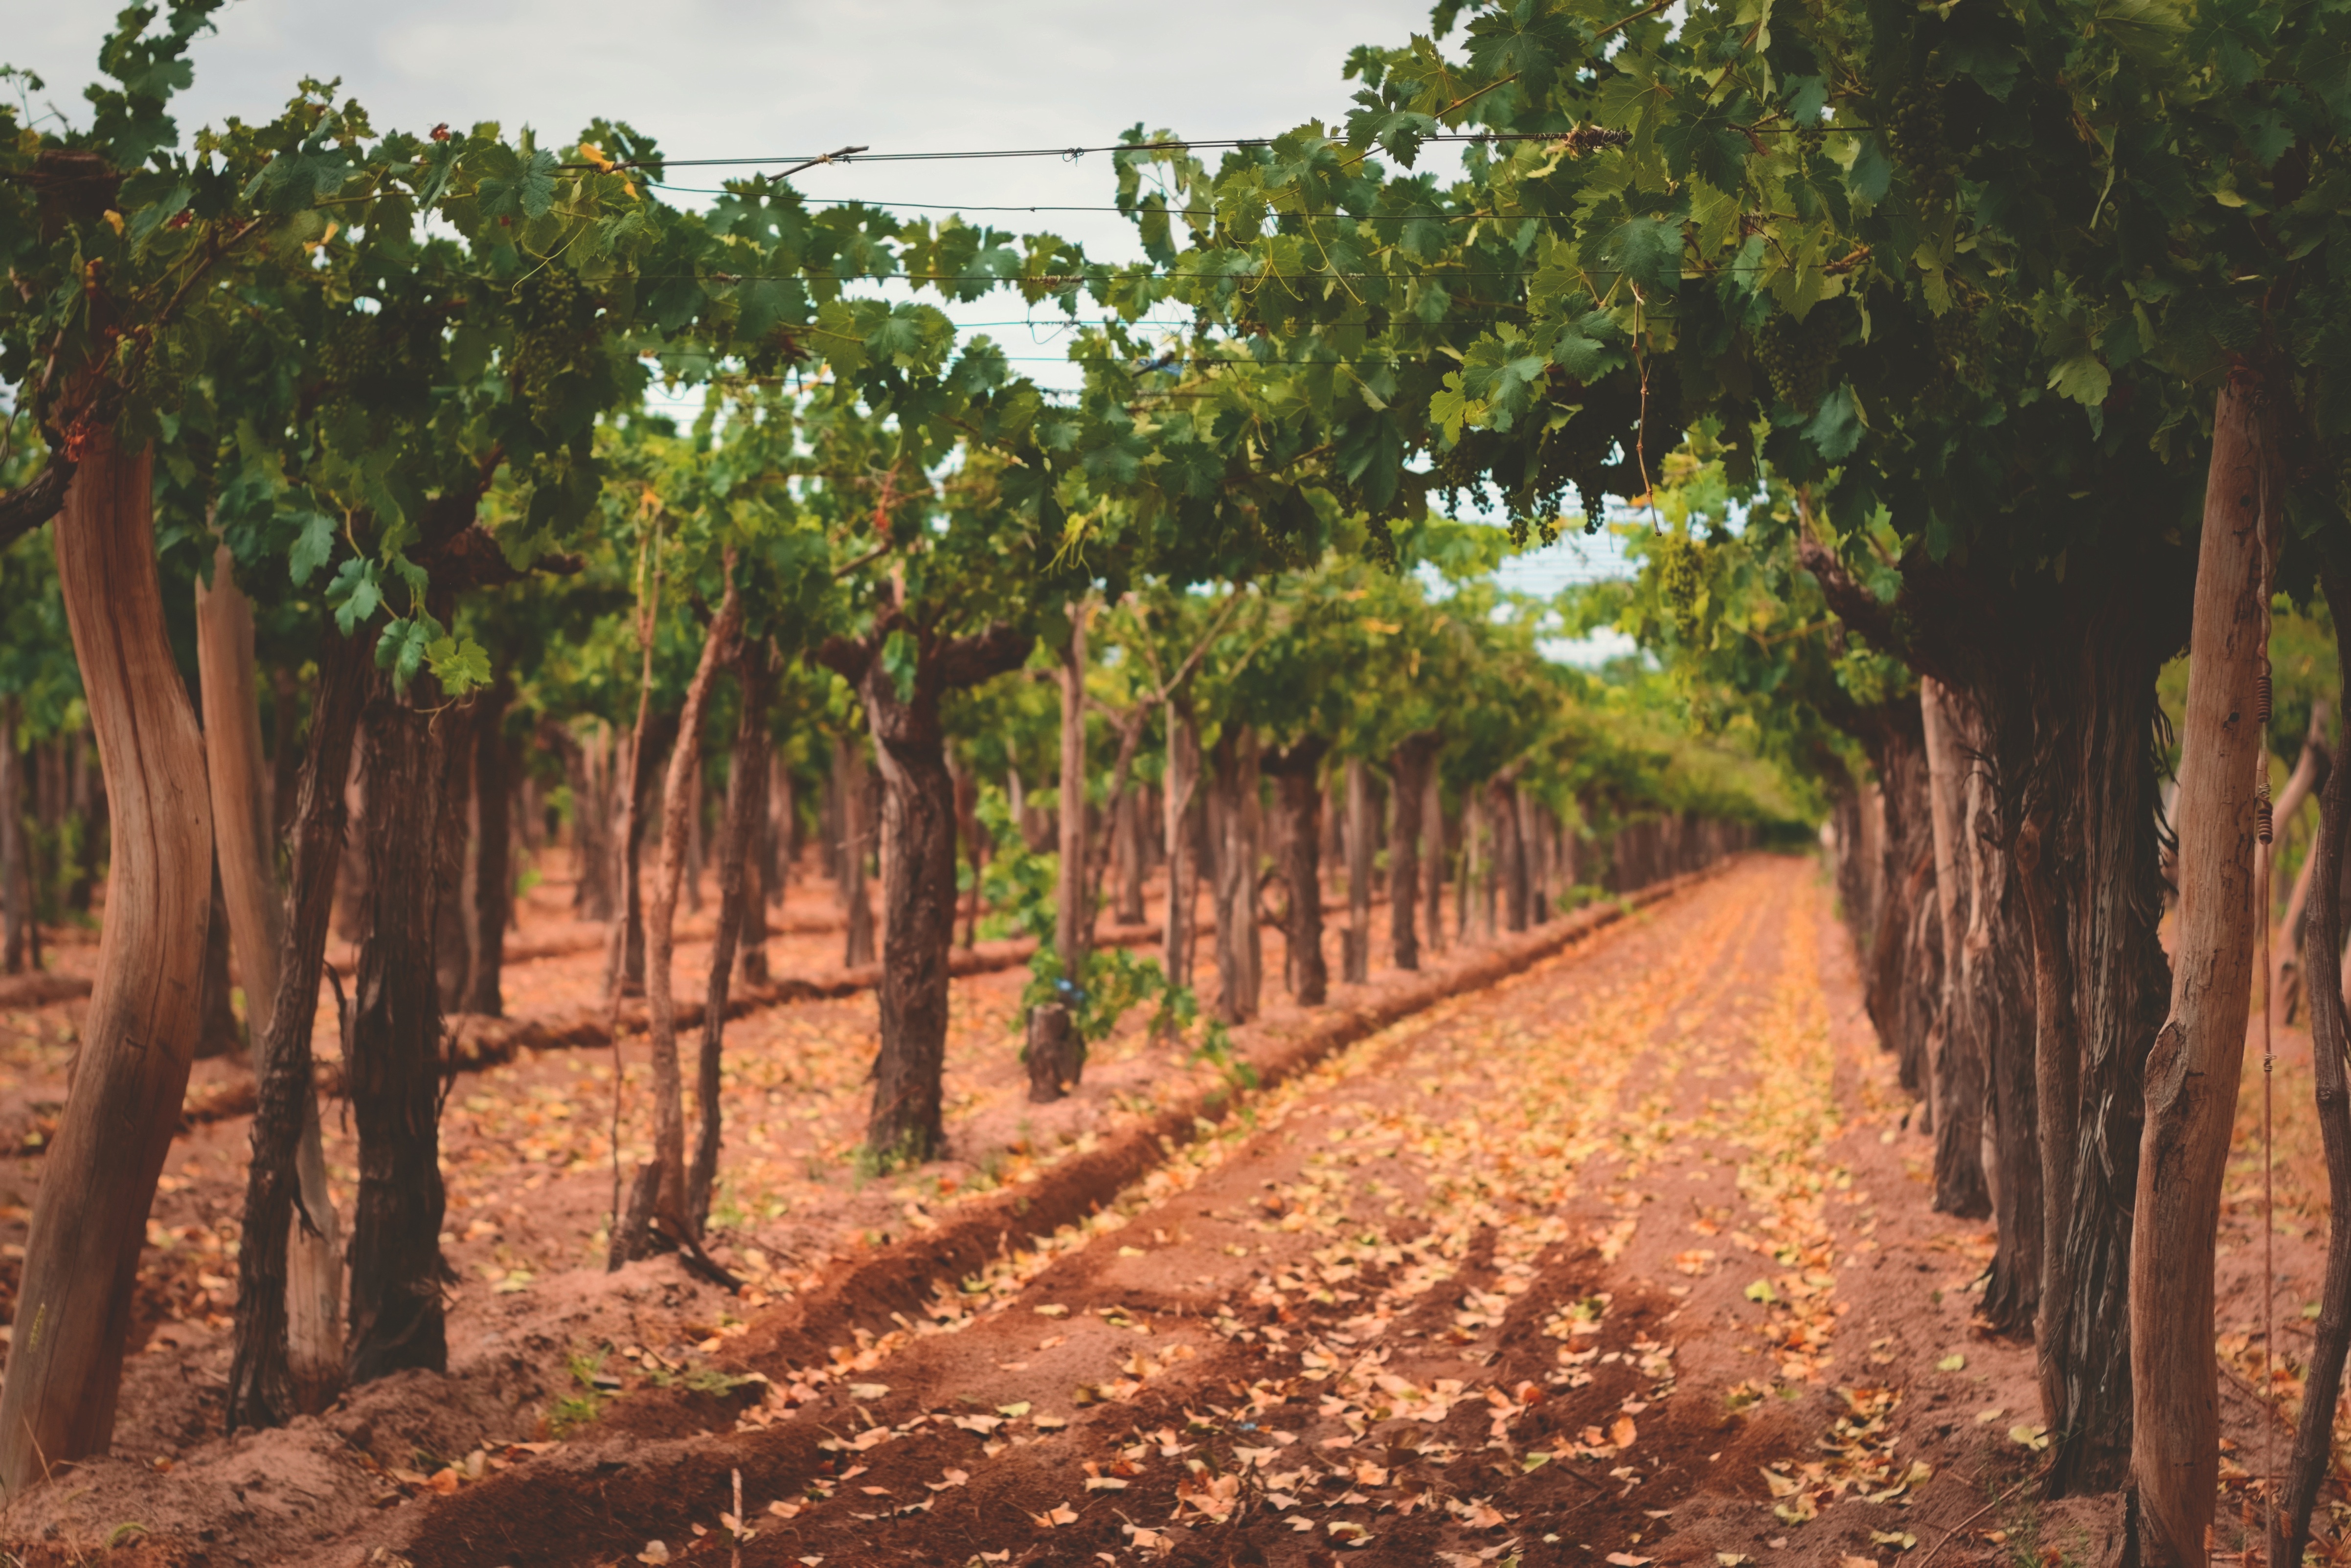 Como fatores no solo podem determinar qualidades em um vinho? 